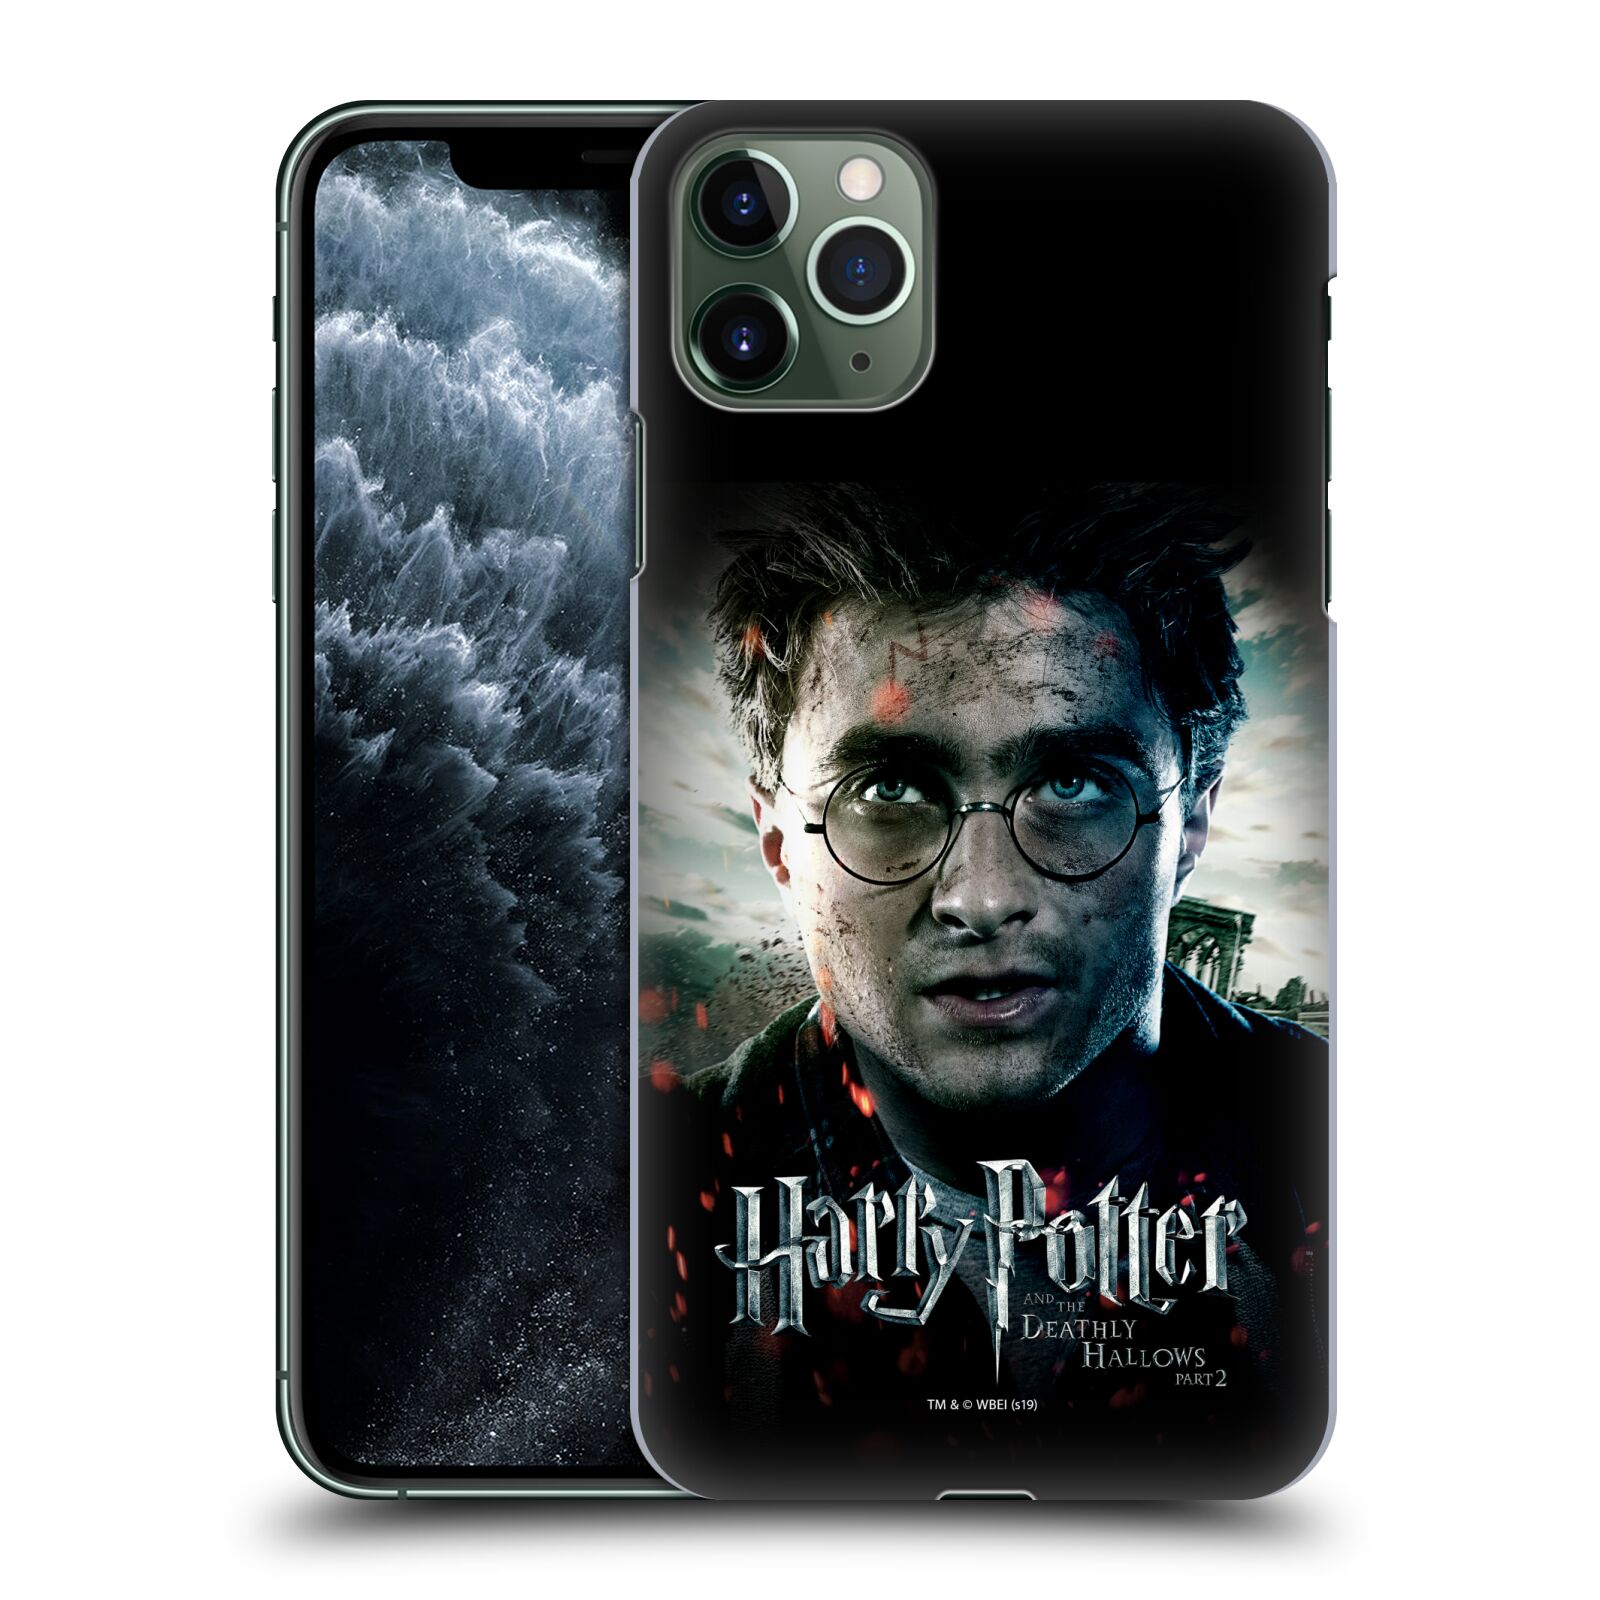 iPhone SE 2020 Head Case Designs sous Licence Officielle Harry Potter Severus Snape Deathly Hallows VIII Coque en Gel Doux Compatible avec Apple iPhone 7 iPhone 8 